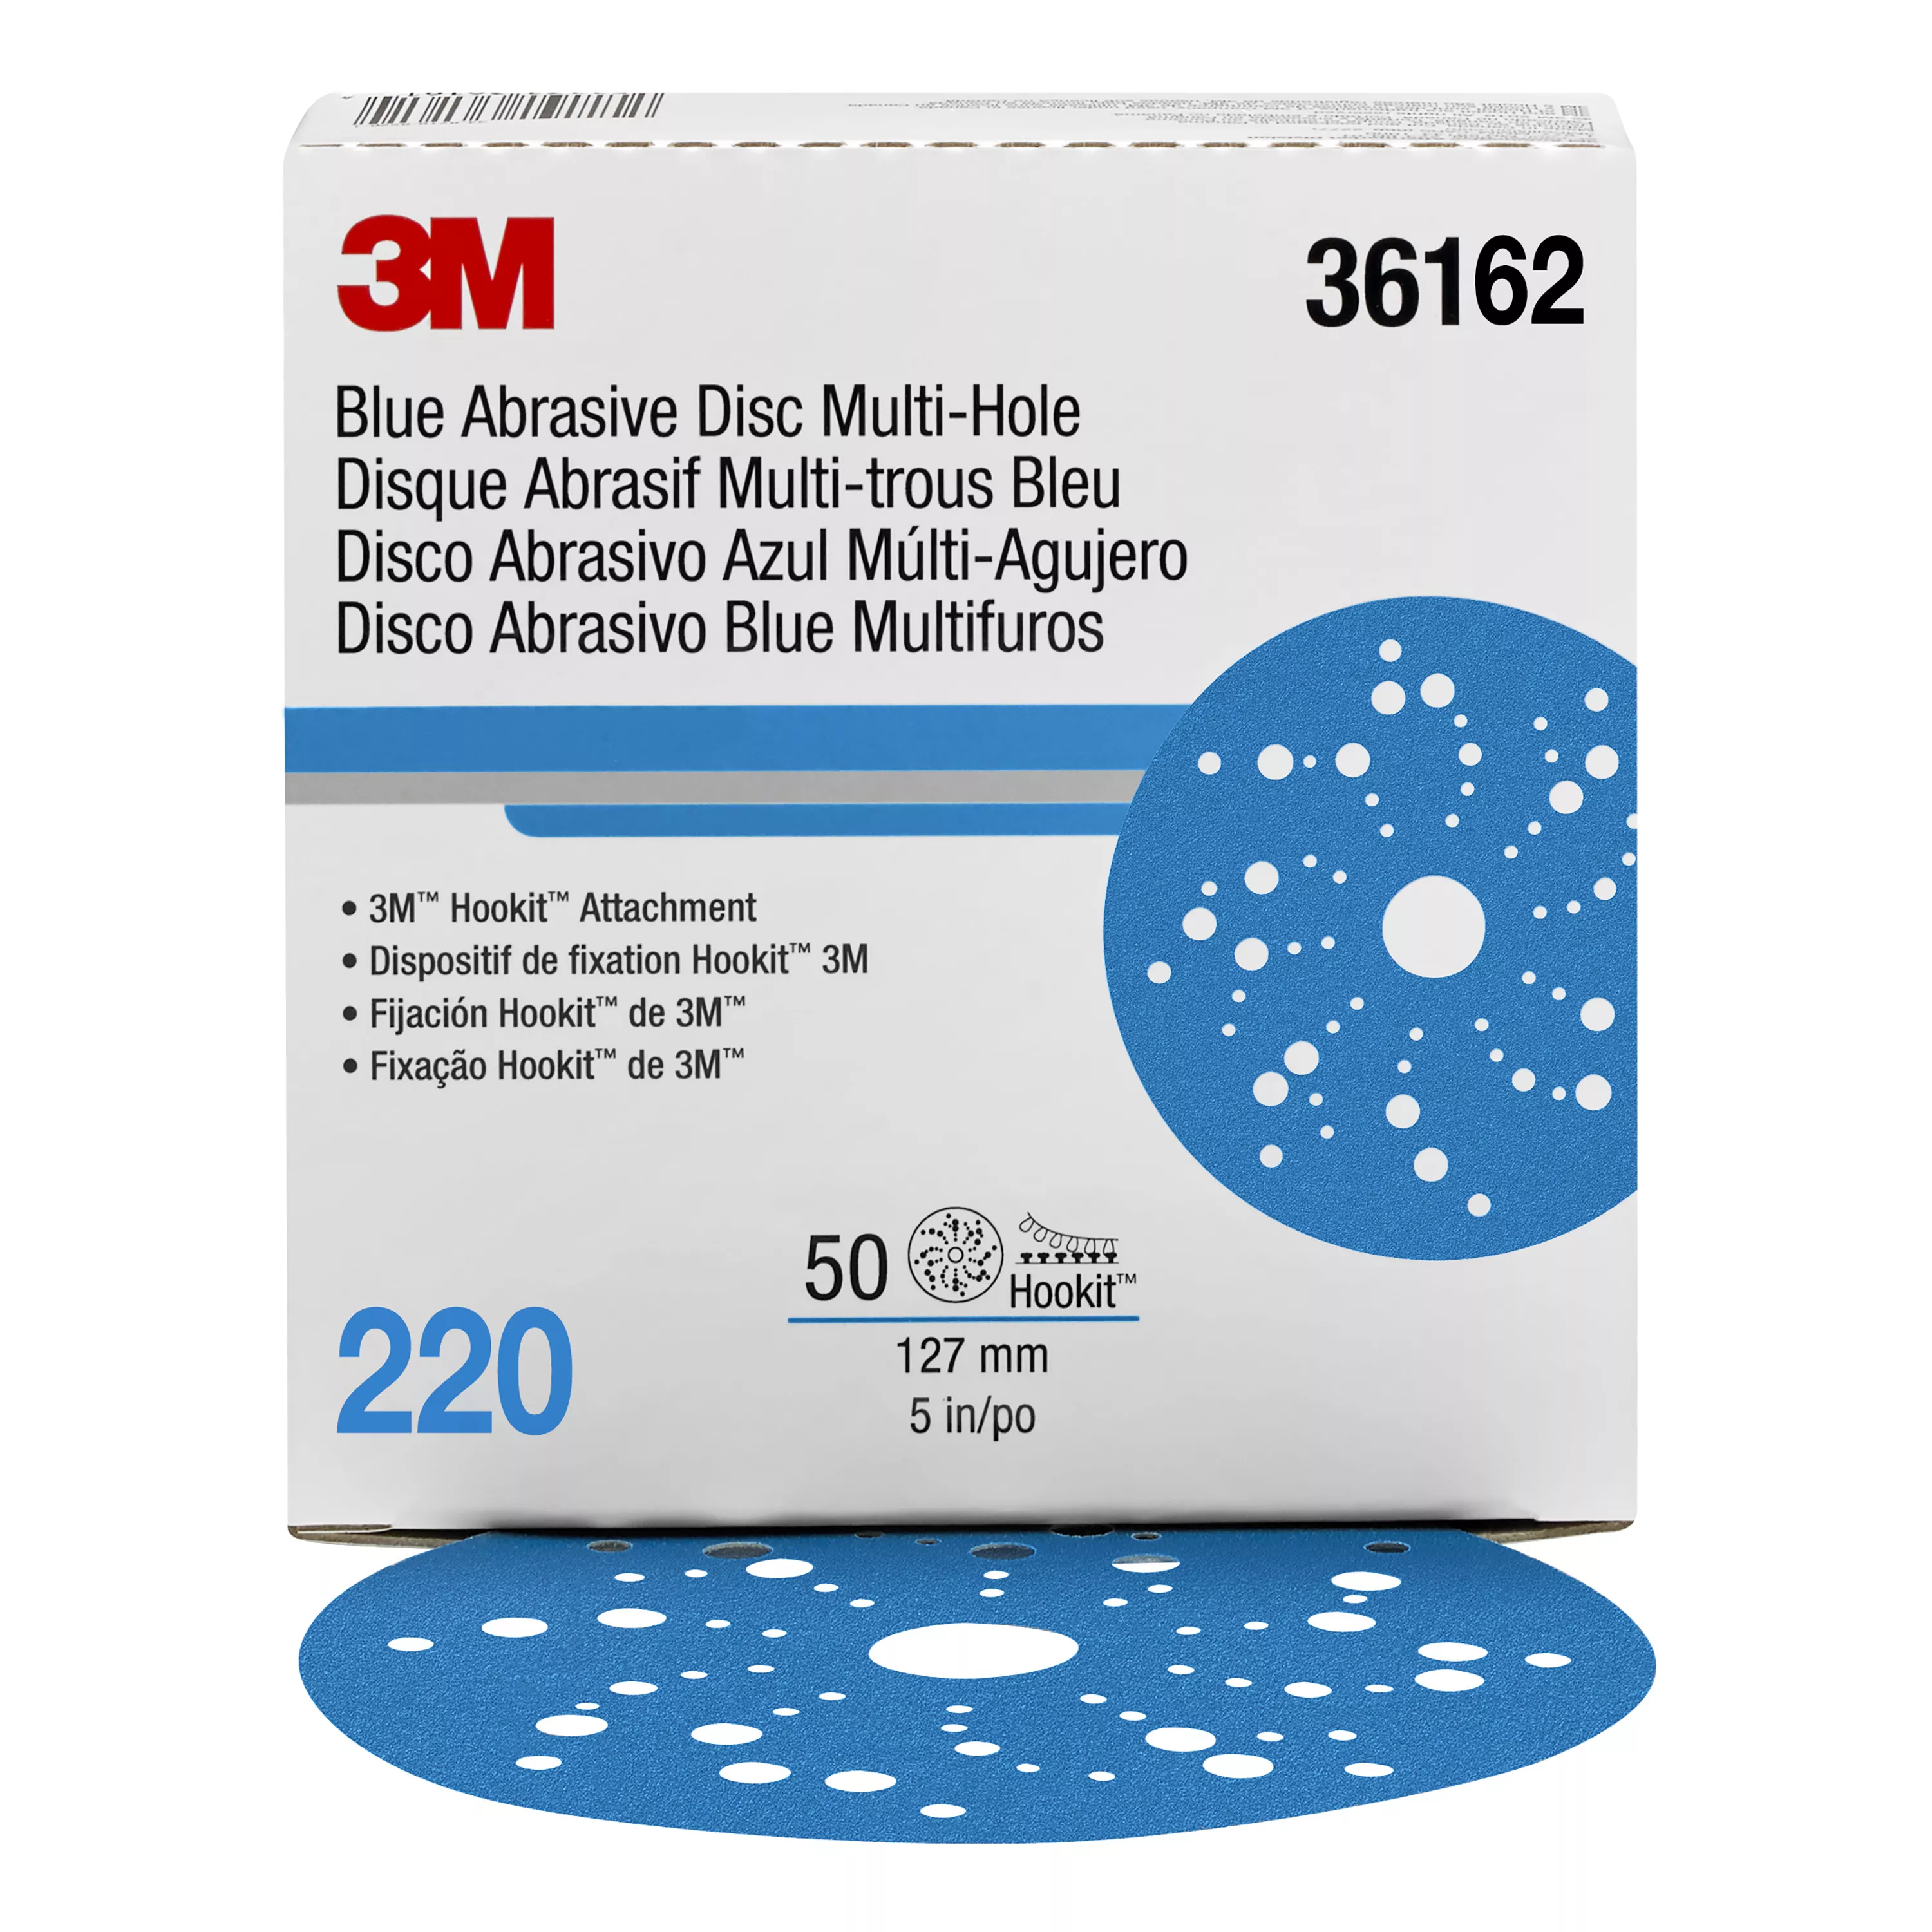 3M™ Hookit™ Blue Abrasive Disc Multi-hole, 36162, 5 in, 220 grade, 50
discs per carton, 4 cartons per case